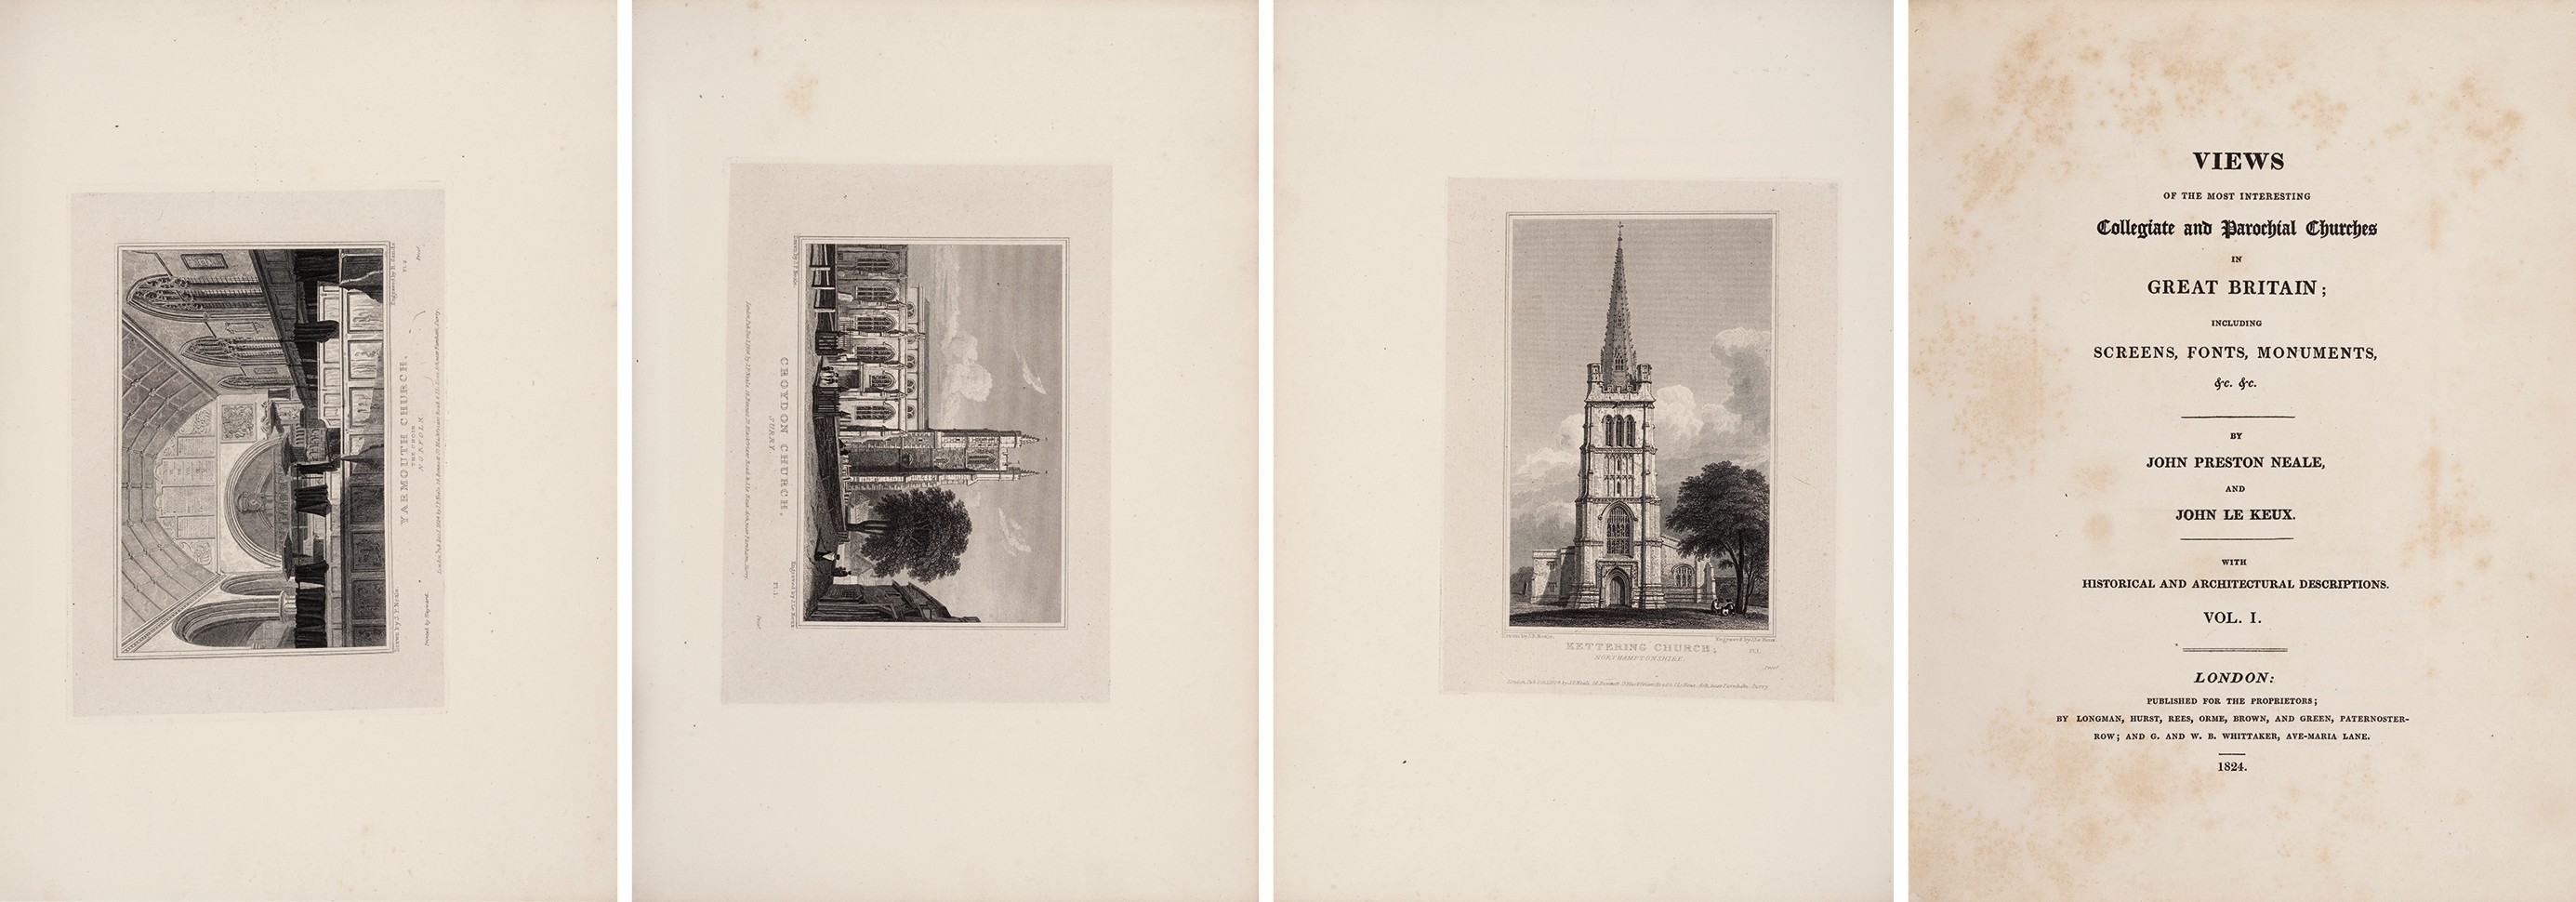 英国城堡和教堂建筑版画集 1824-25年伦敦 Longman 出版